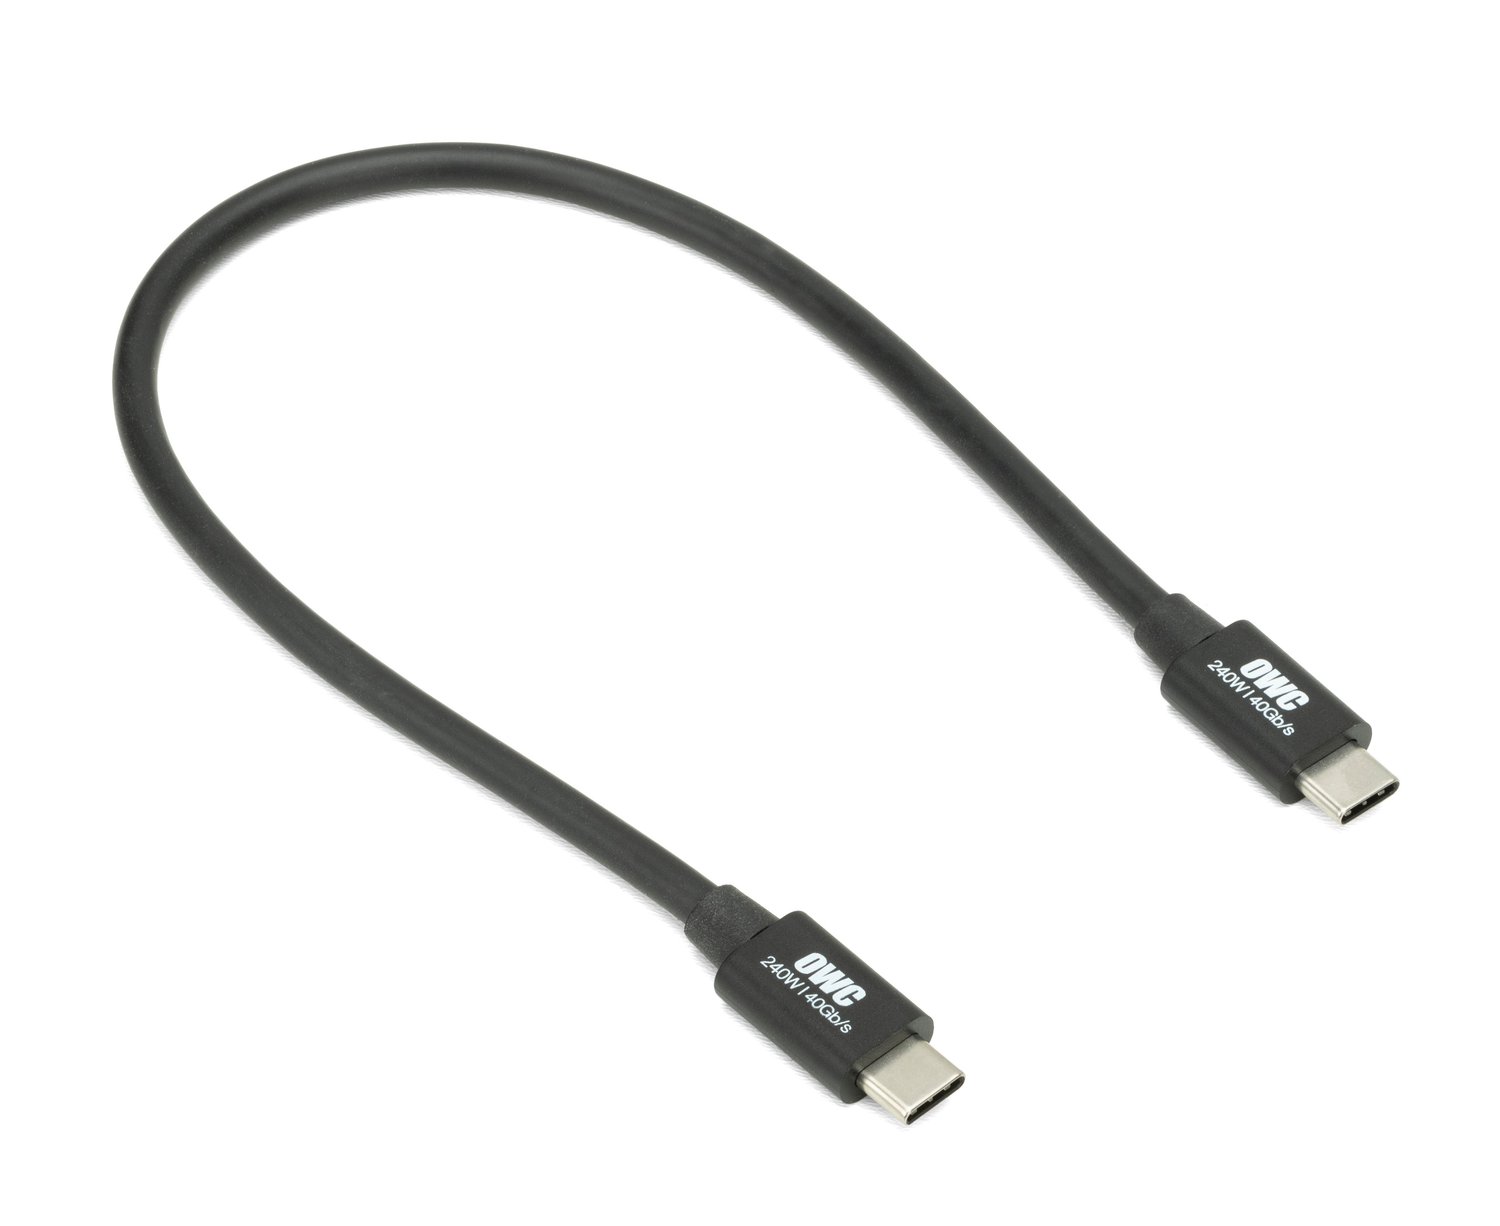 OWC 0.3 Meter (11.8) Thunderbolt (USB-C) Cable at MacSales.com